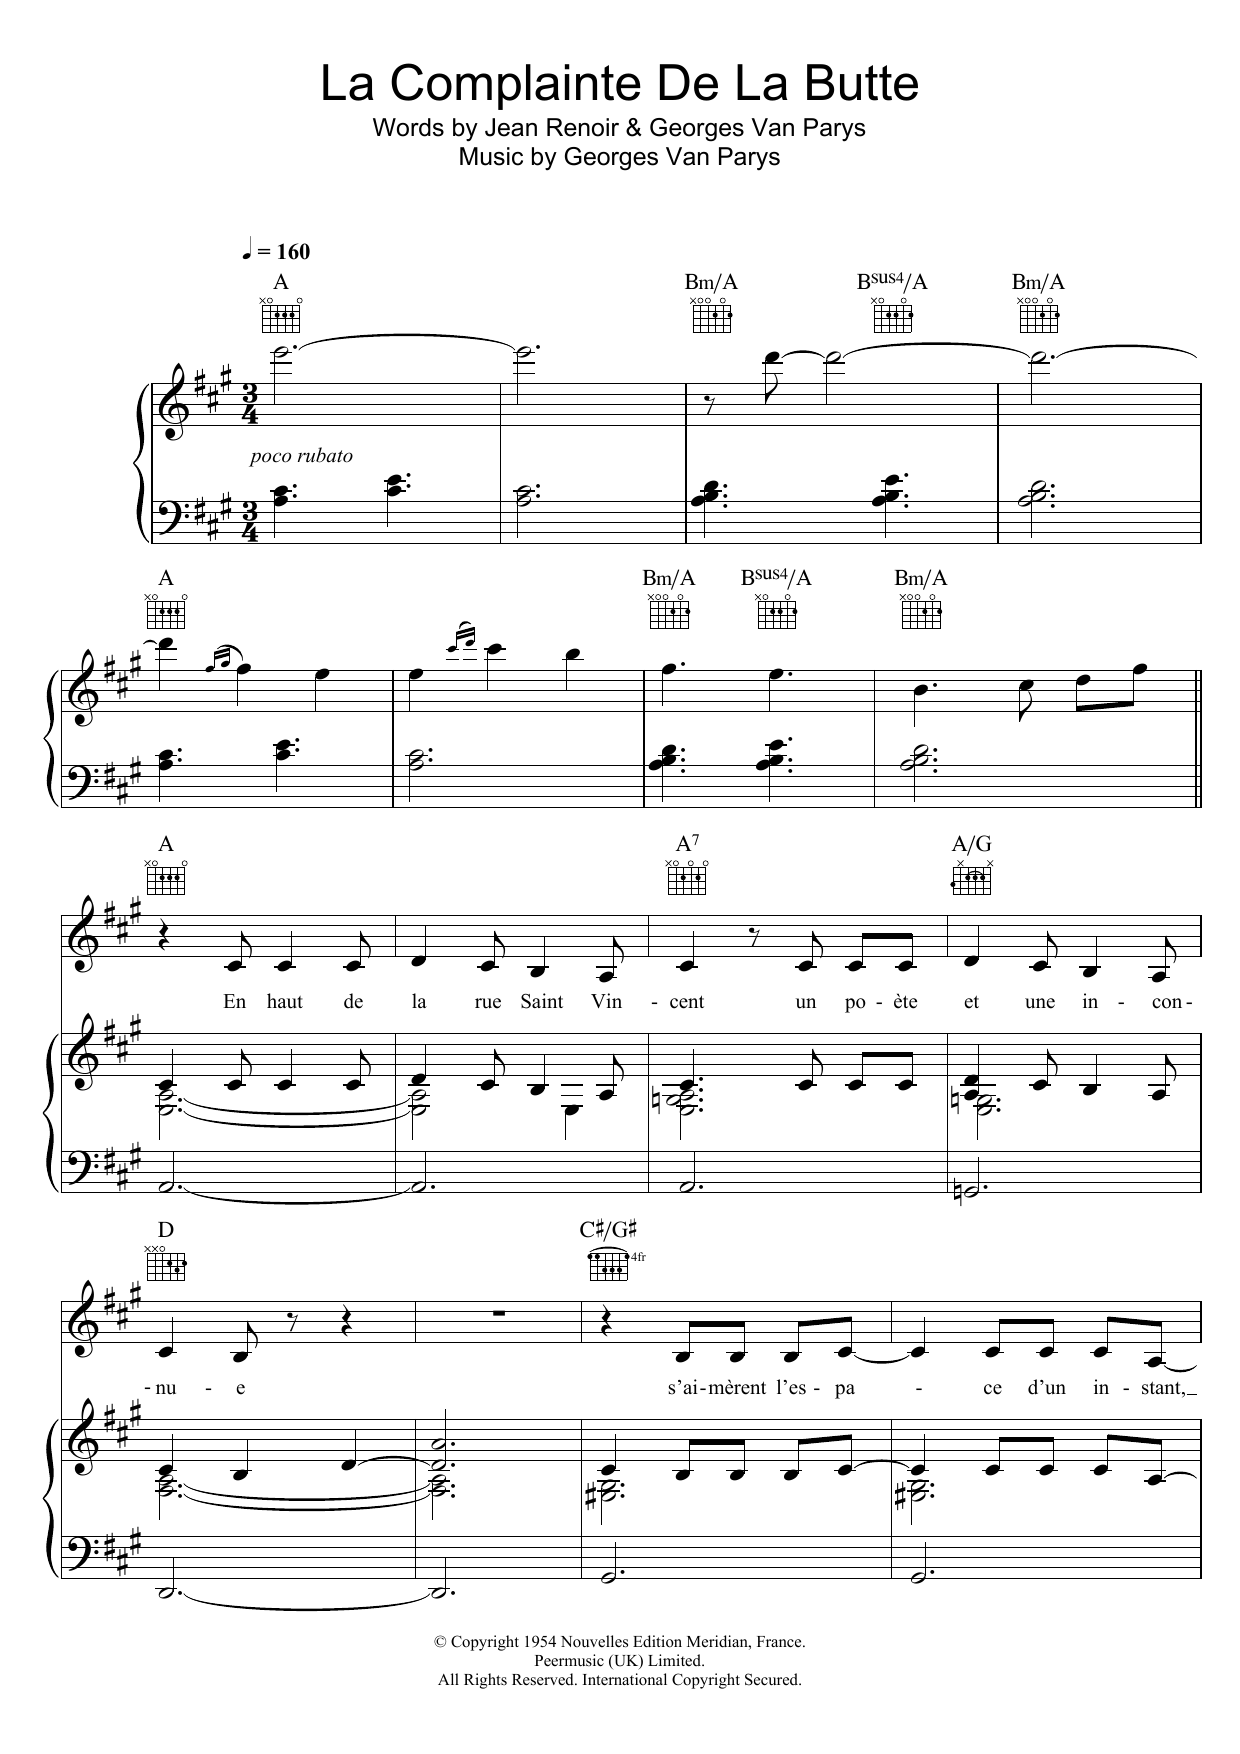 Zaz La Complainte De La Butte sheet music notes and chords arranged for Piano, Vocal & Guitar Chords